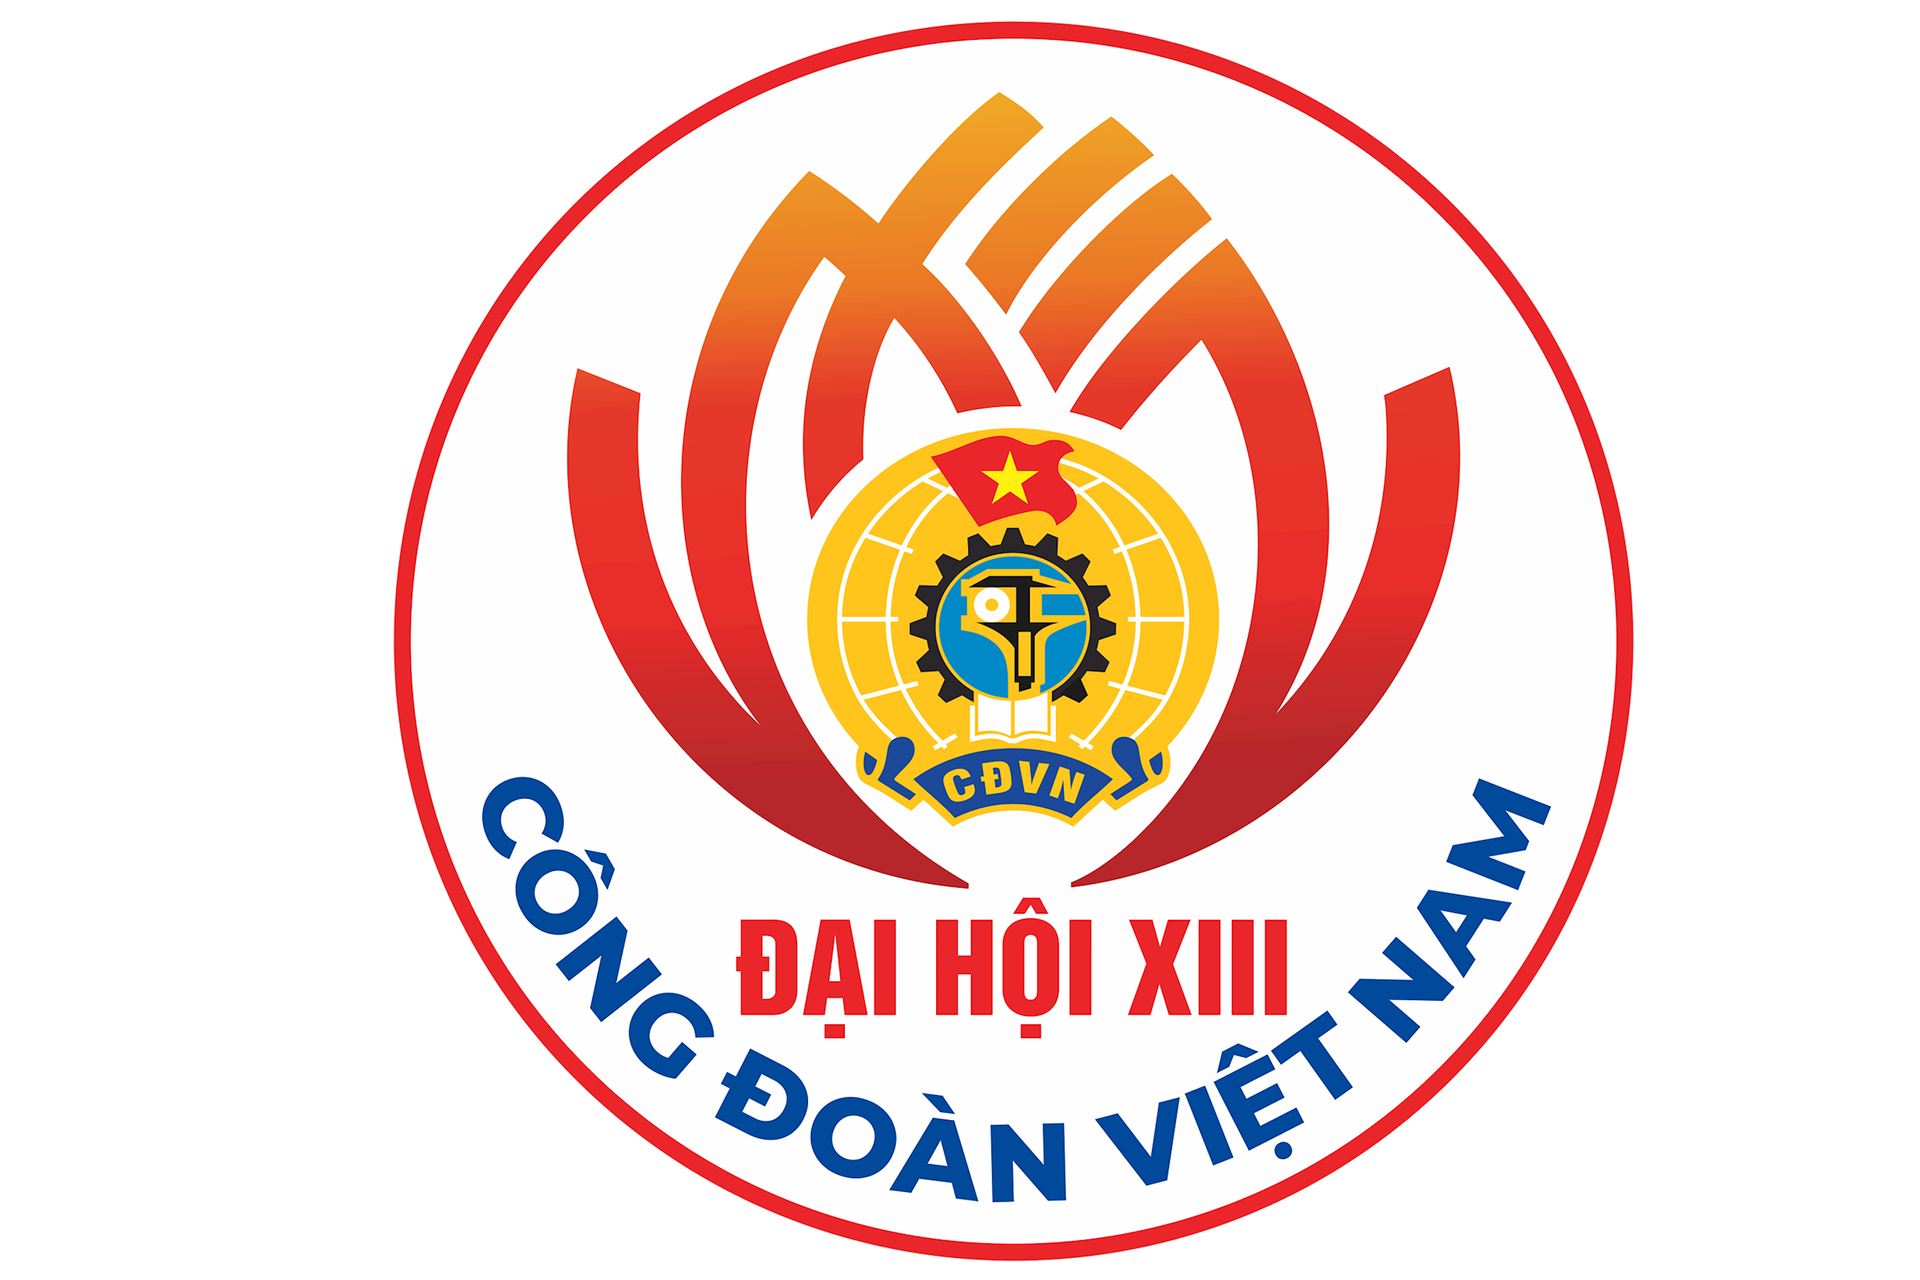 ban-sao-cua-logo-dh-cong-doan-viet-nam.png